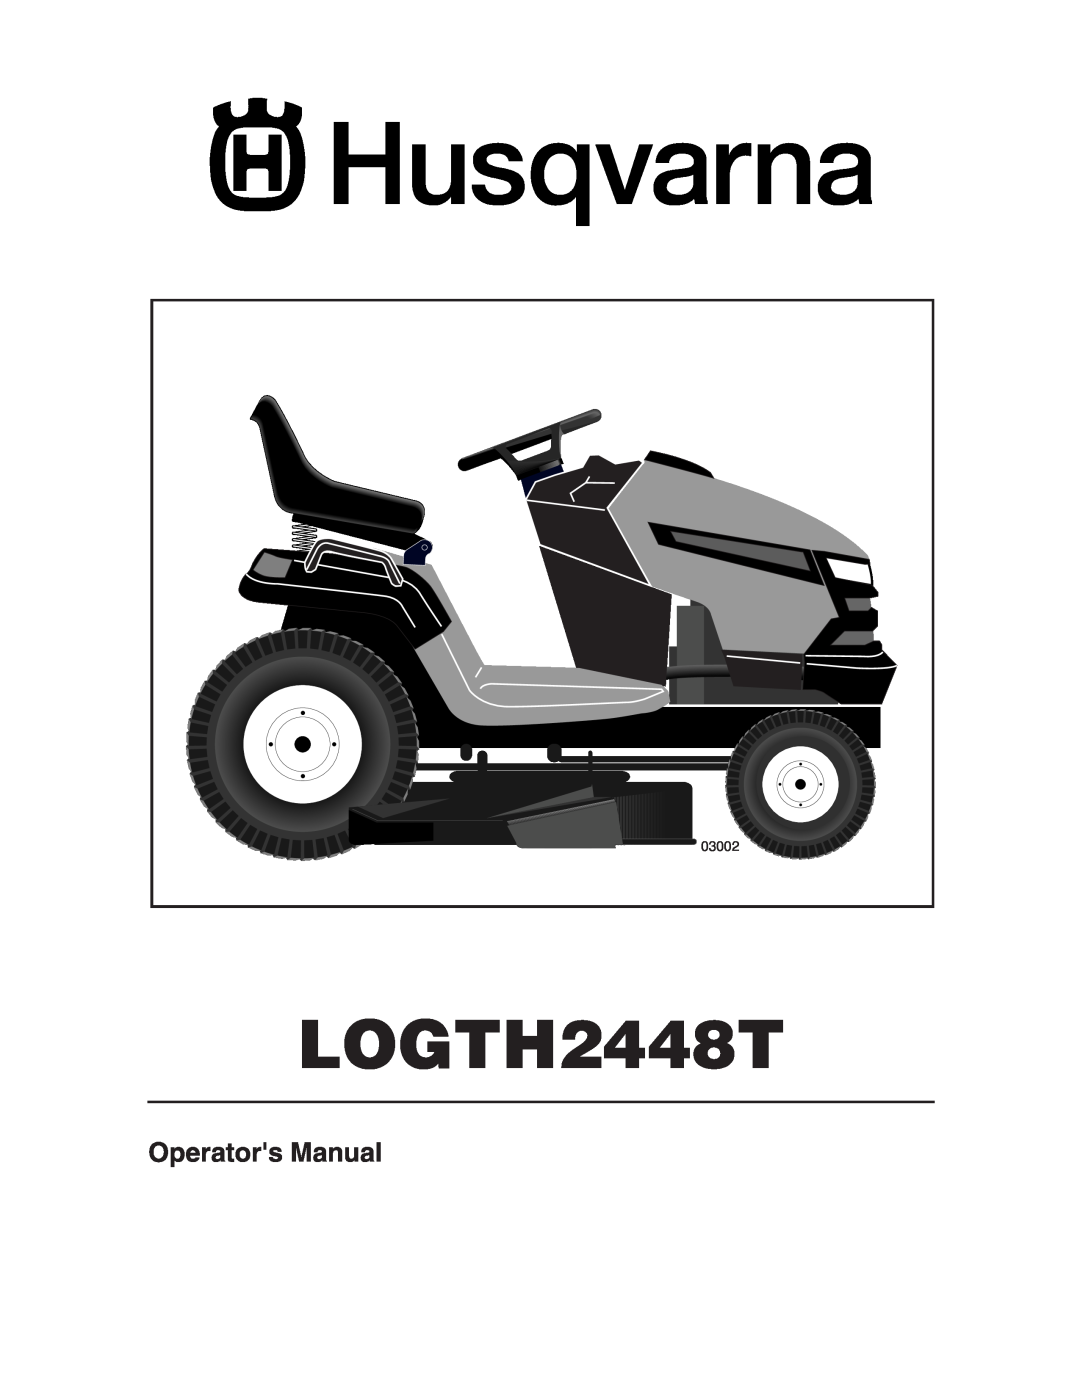 Husqvarna LOGTH2448T manual Operators Manual, 03002 